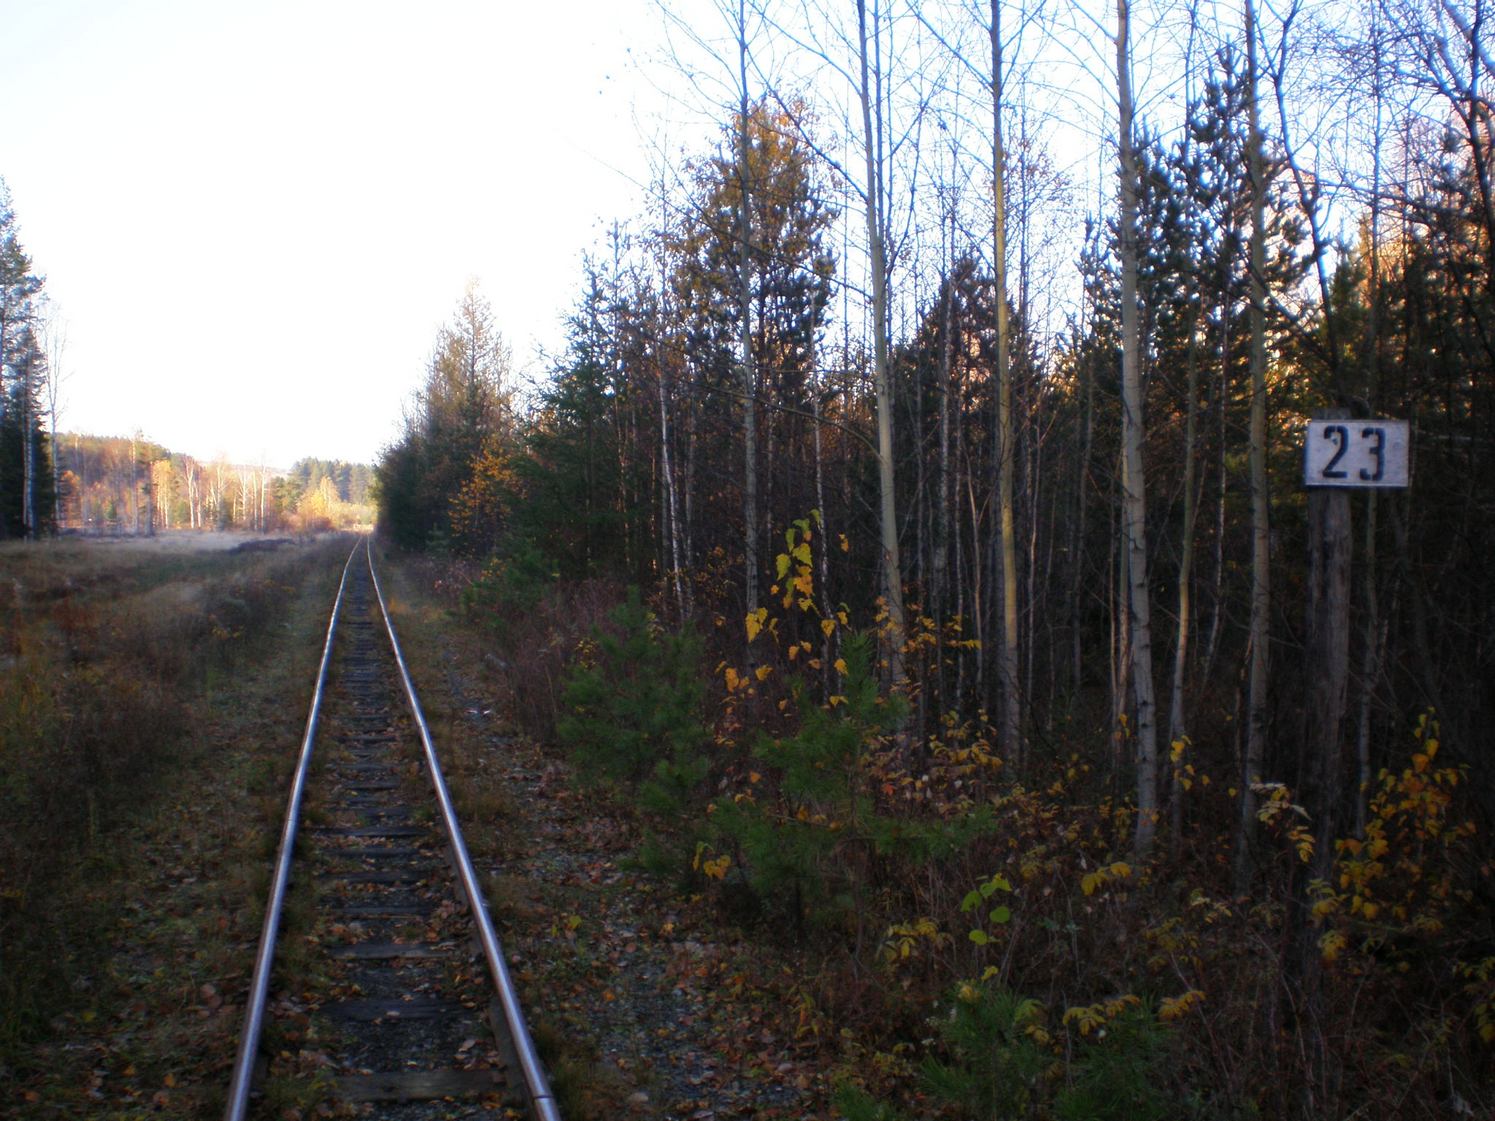 Висимо-Уткинская узкоколейная железная дорога  — фотографии, сделанные в 2007 году (часть 18)